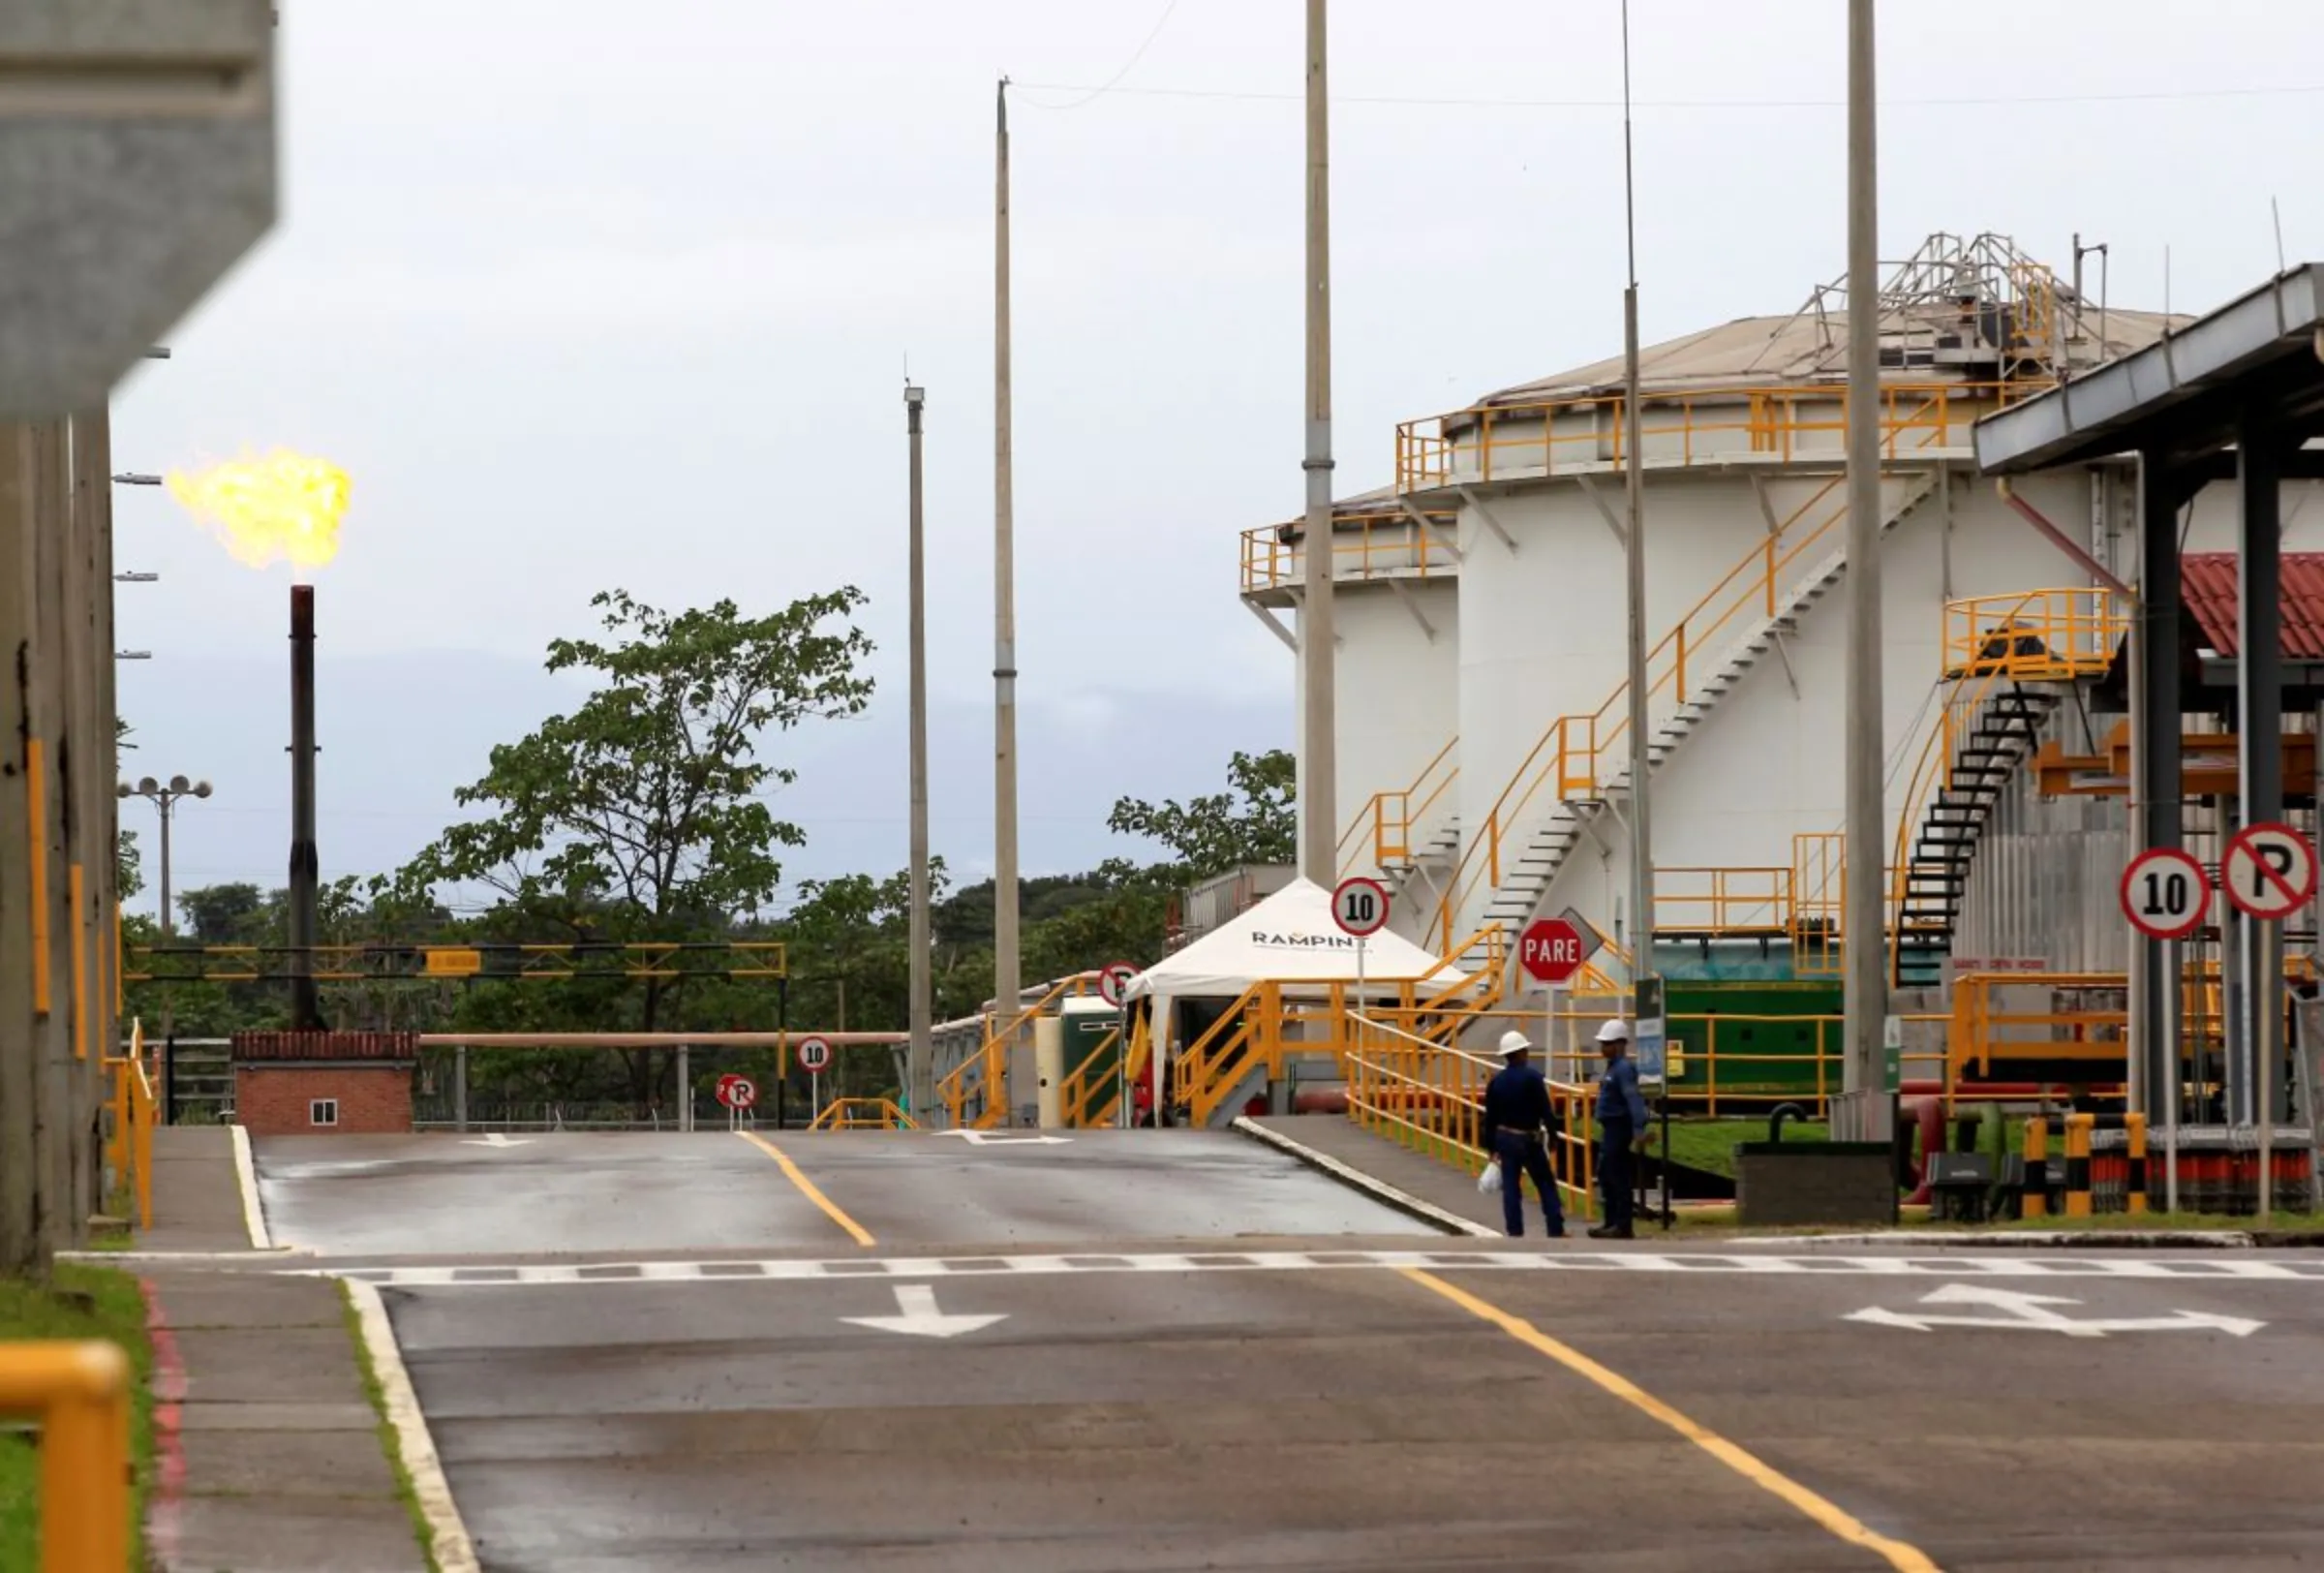 Workers are seen at Ecopetrol's Castilla oil rig platform, in Castilla La Nueva, Colombia June 26, 2018. REUTERS/Luisa Gonzalez